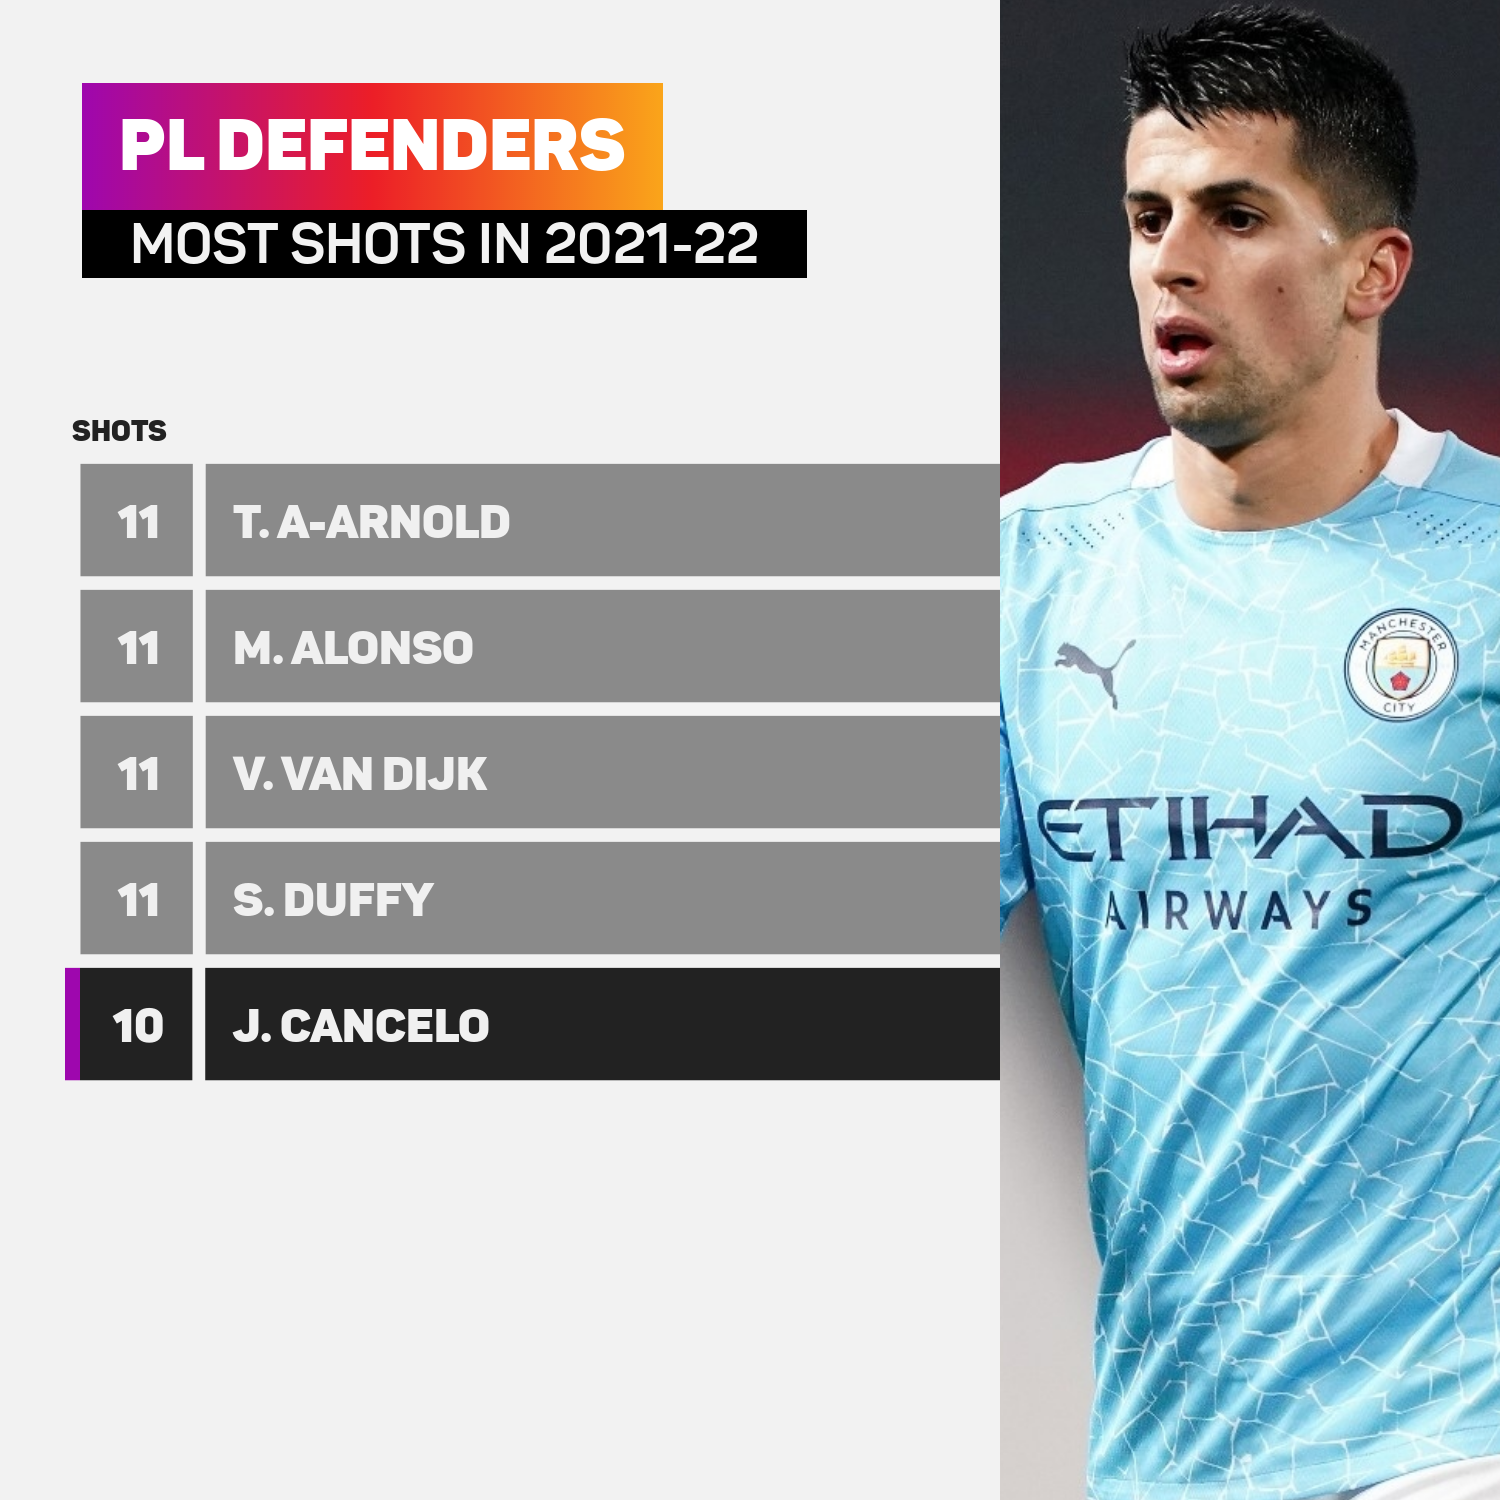 PL defenders most shots 2021-22